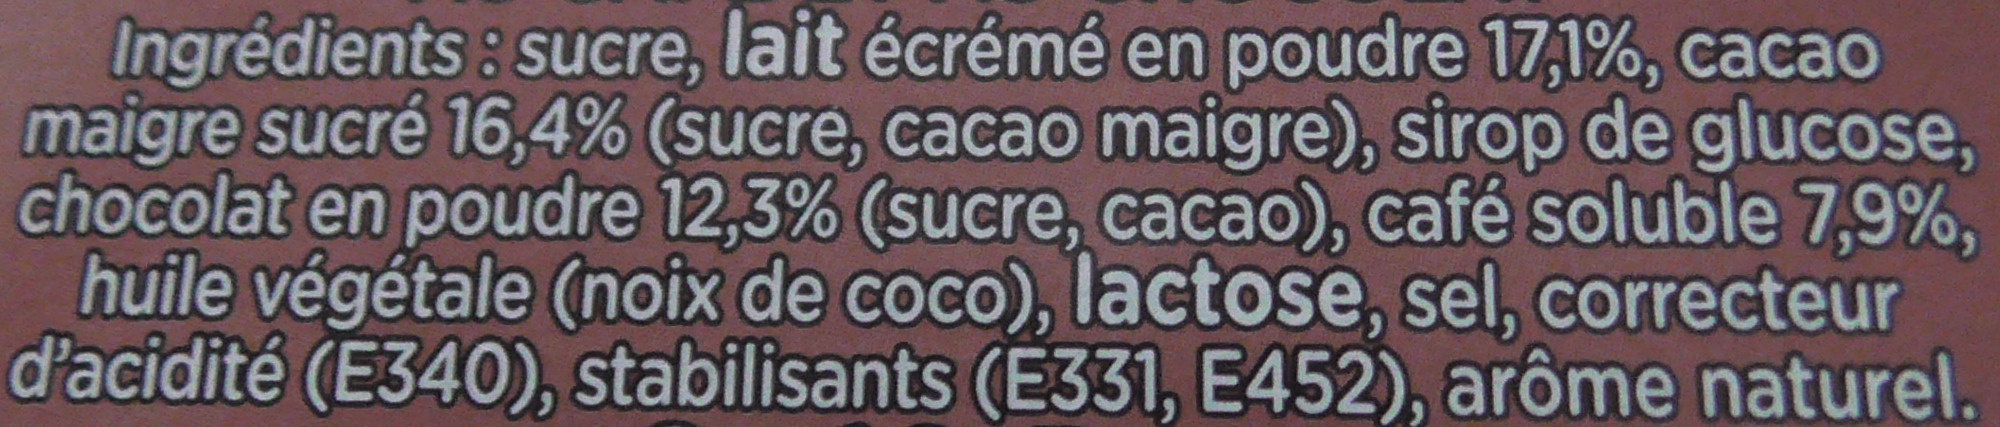 NESCAFÉ Cappuccino Choco, Café soluble, Boîte de 8 sticks - Ingredientes - fr